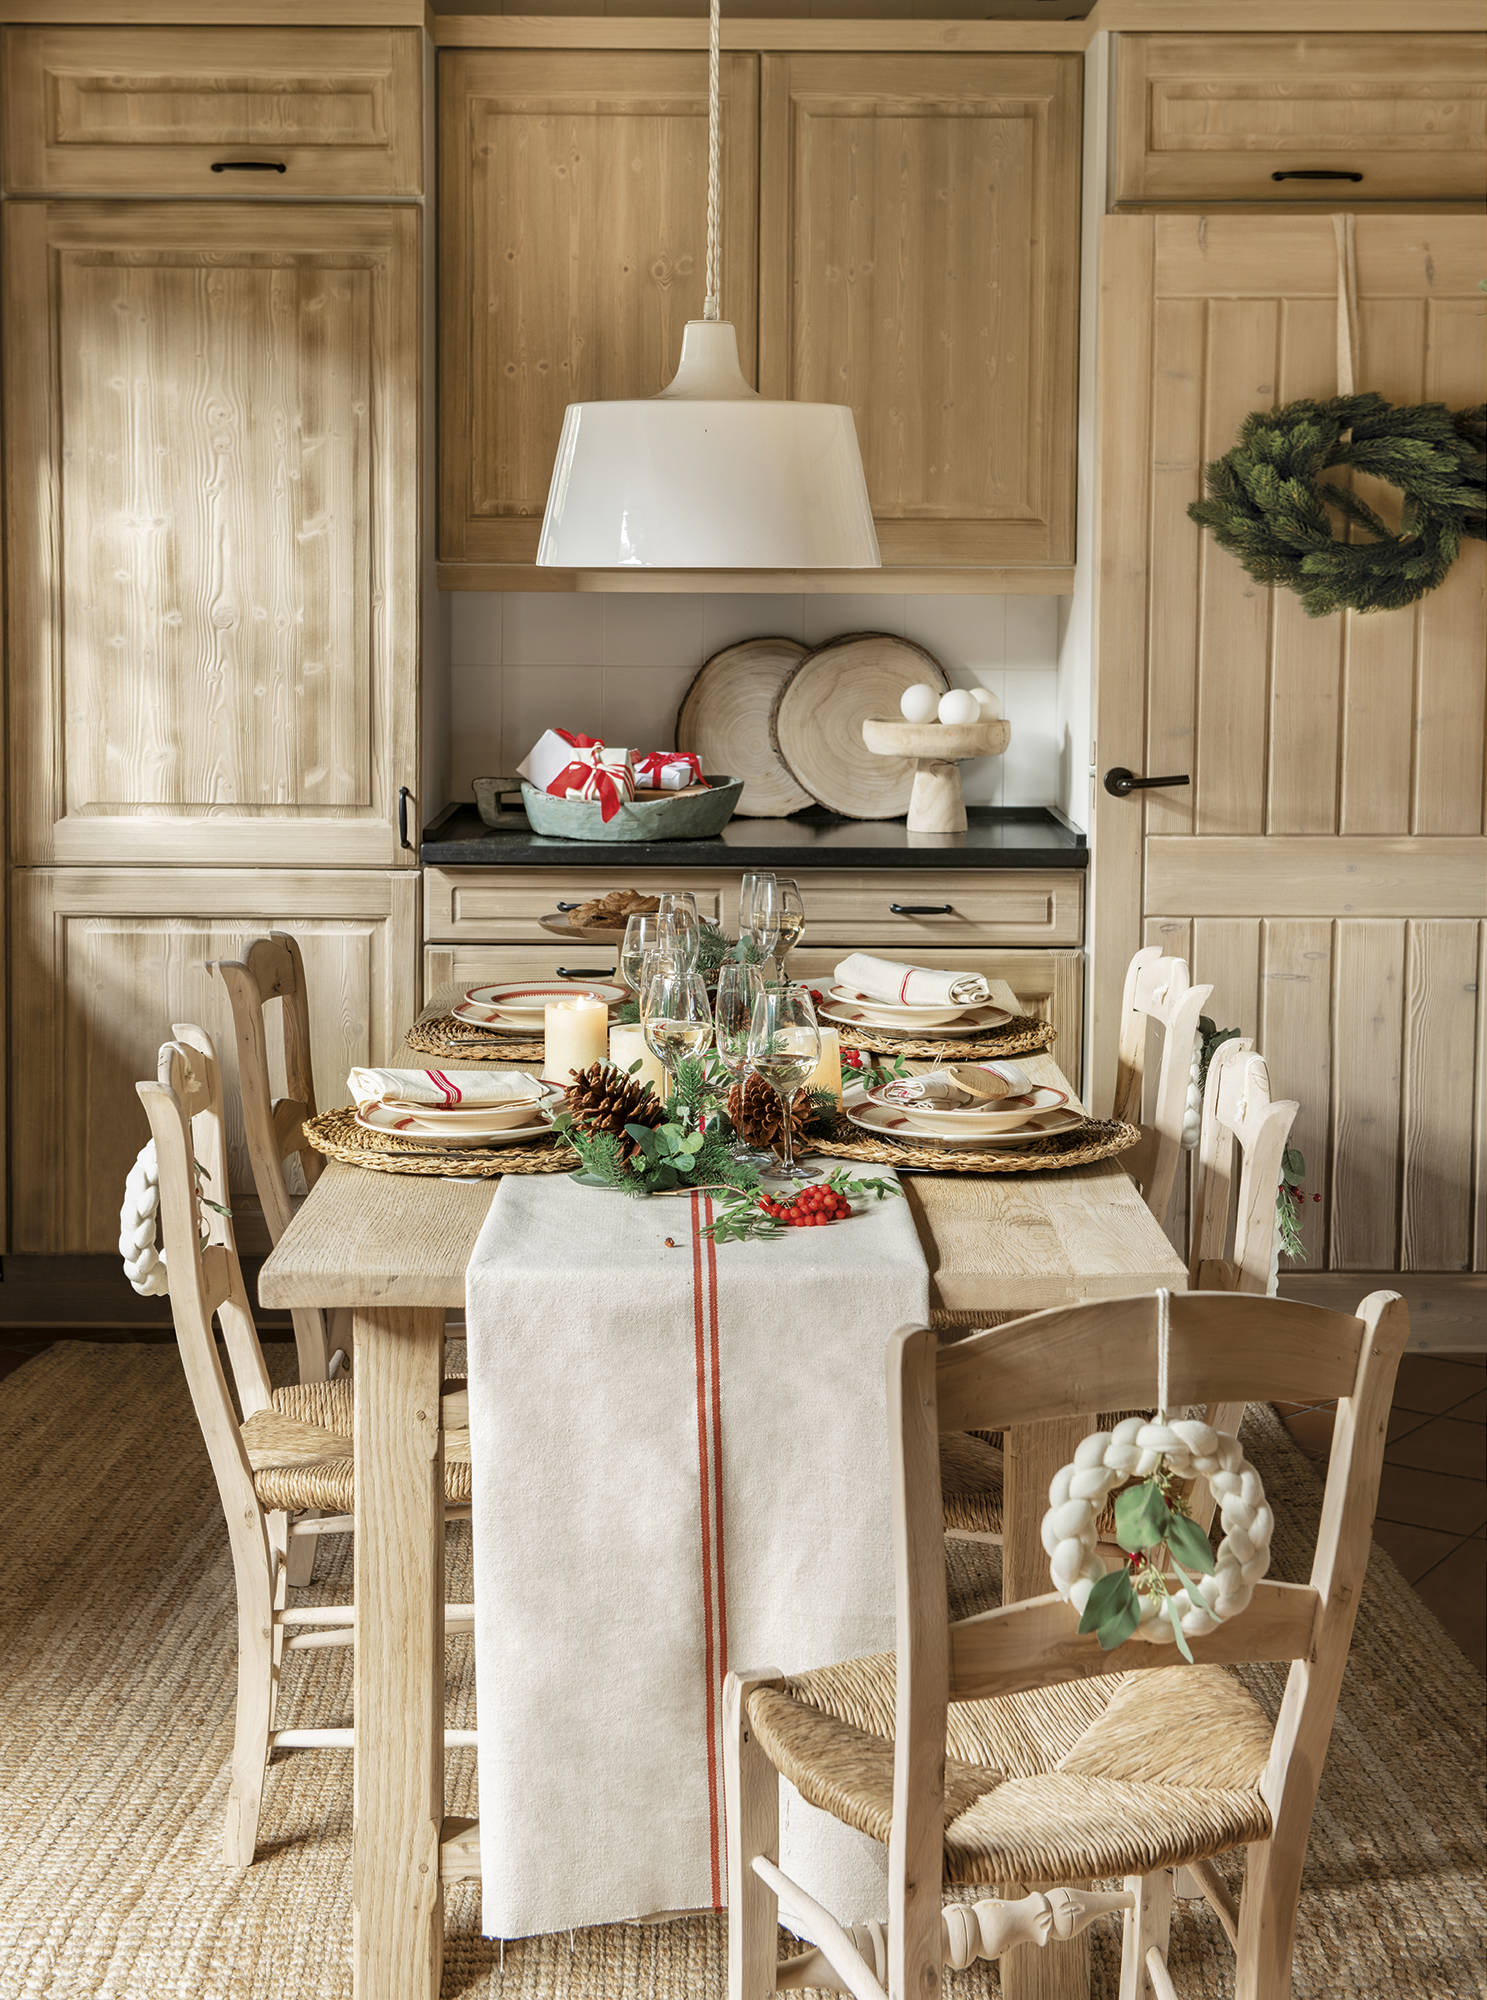 Comedor rústico con muebles de madera y decoración de Navidad.